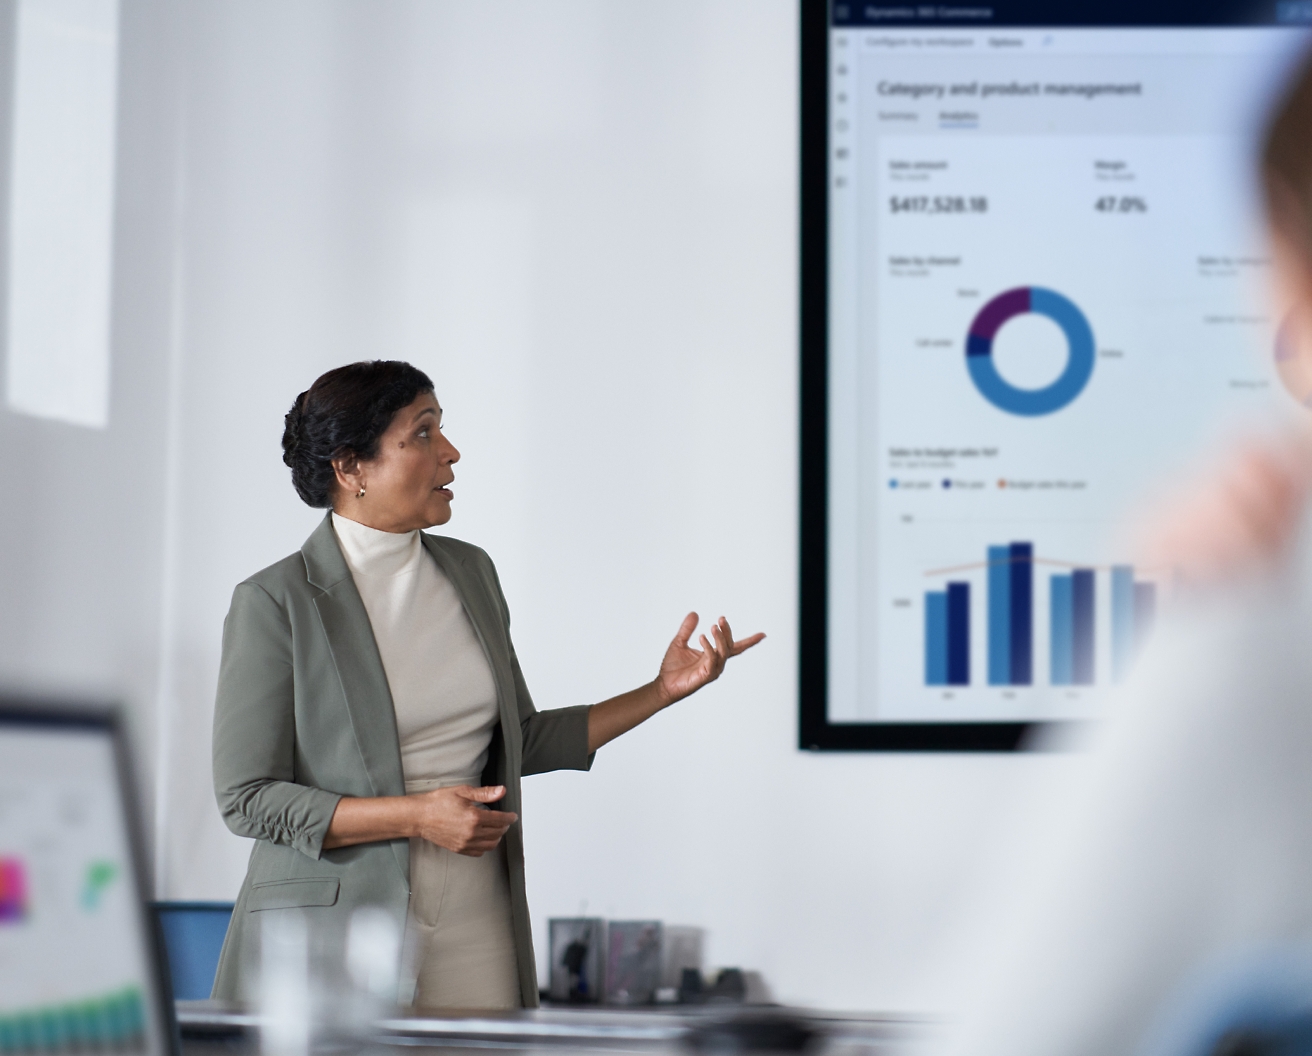 Egy női szakember egy modern irodai környezetben egy képernyőn pénzügyi adatokat mutat be a közönségének.